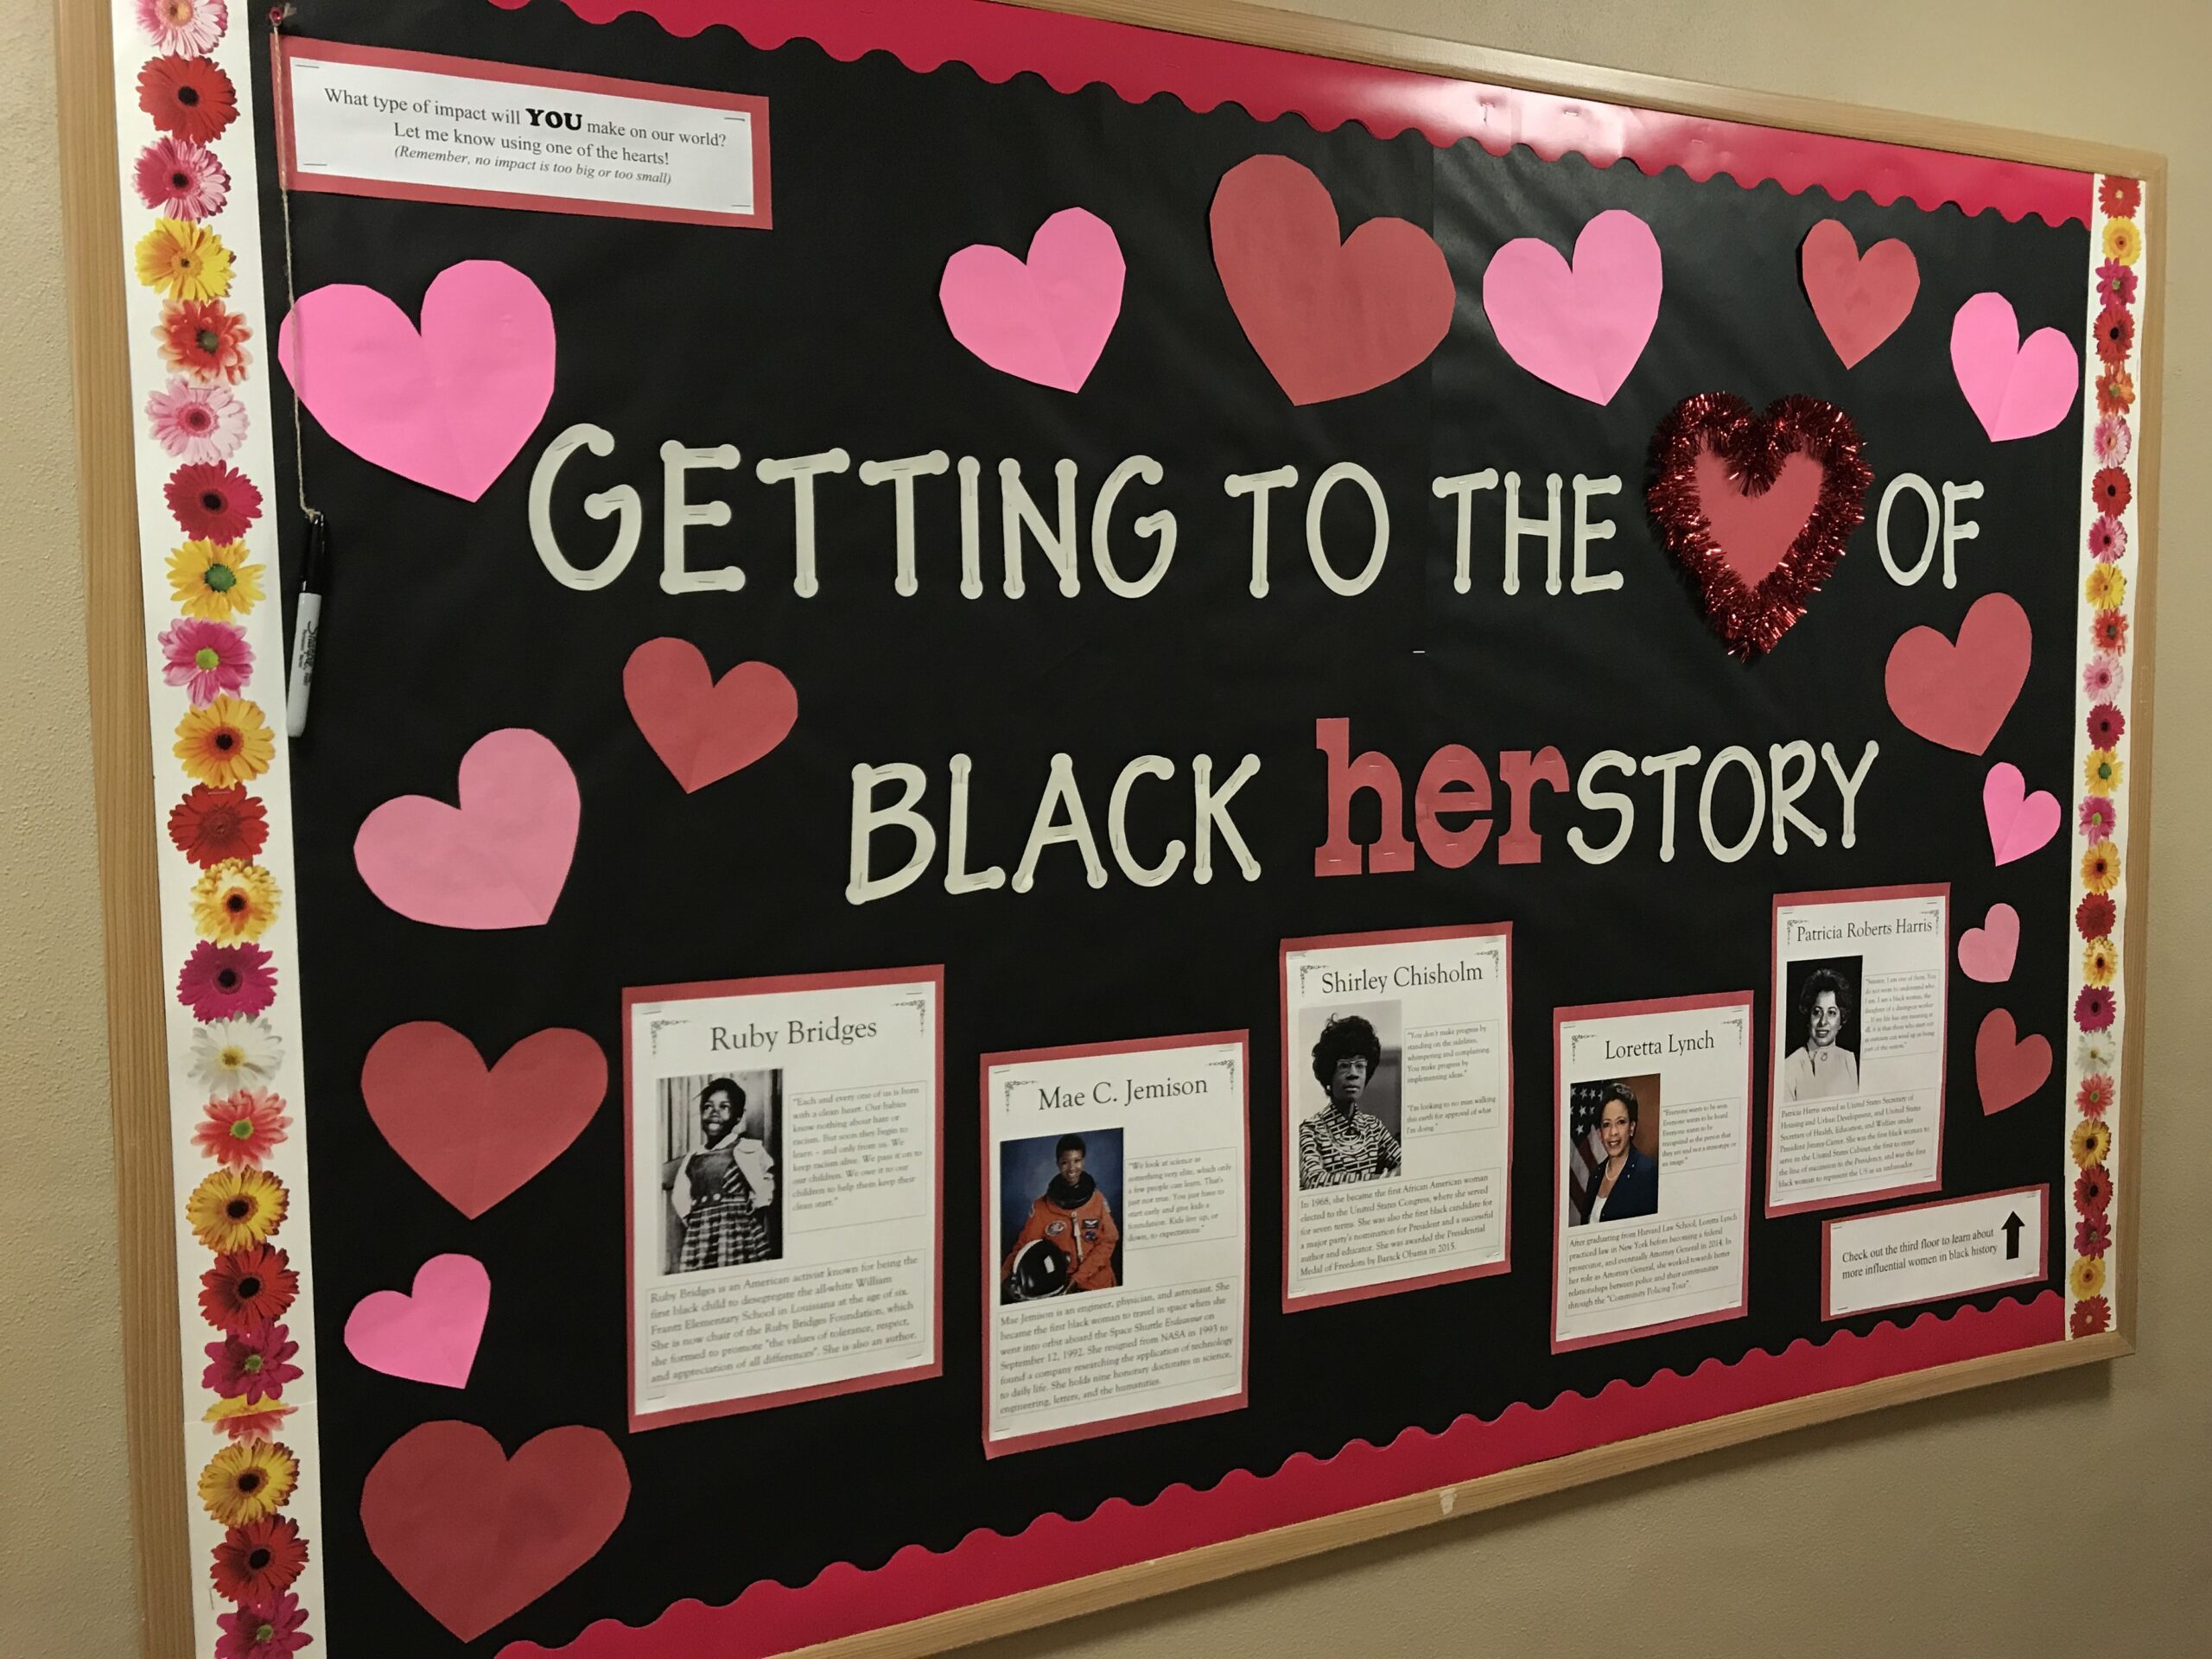 لوحة إعلانات سوداء تقول الوصول إلى قلب قصة بلاك.  هناك قلوب وردية وحمراء على الحدود وصور وأوصاف لنساء سوداوات مشهورات.